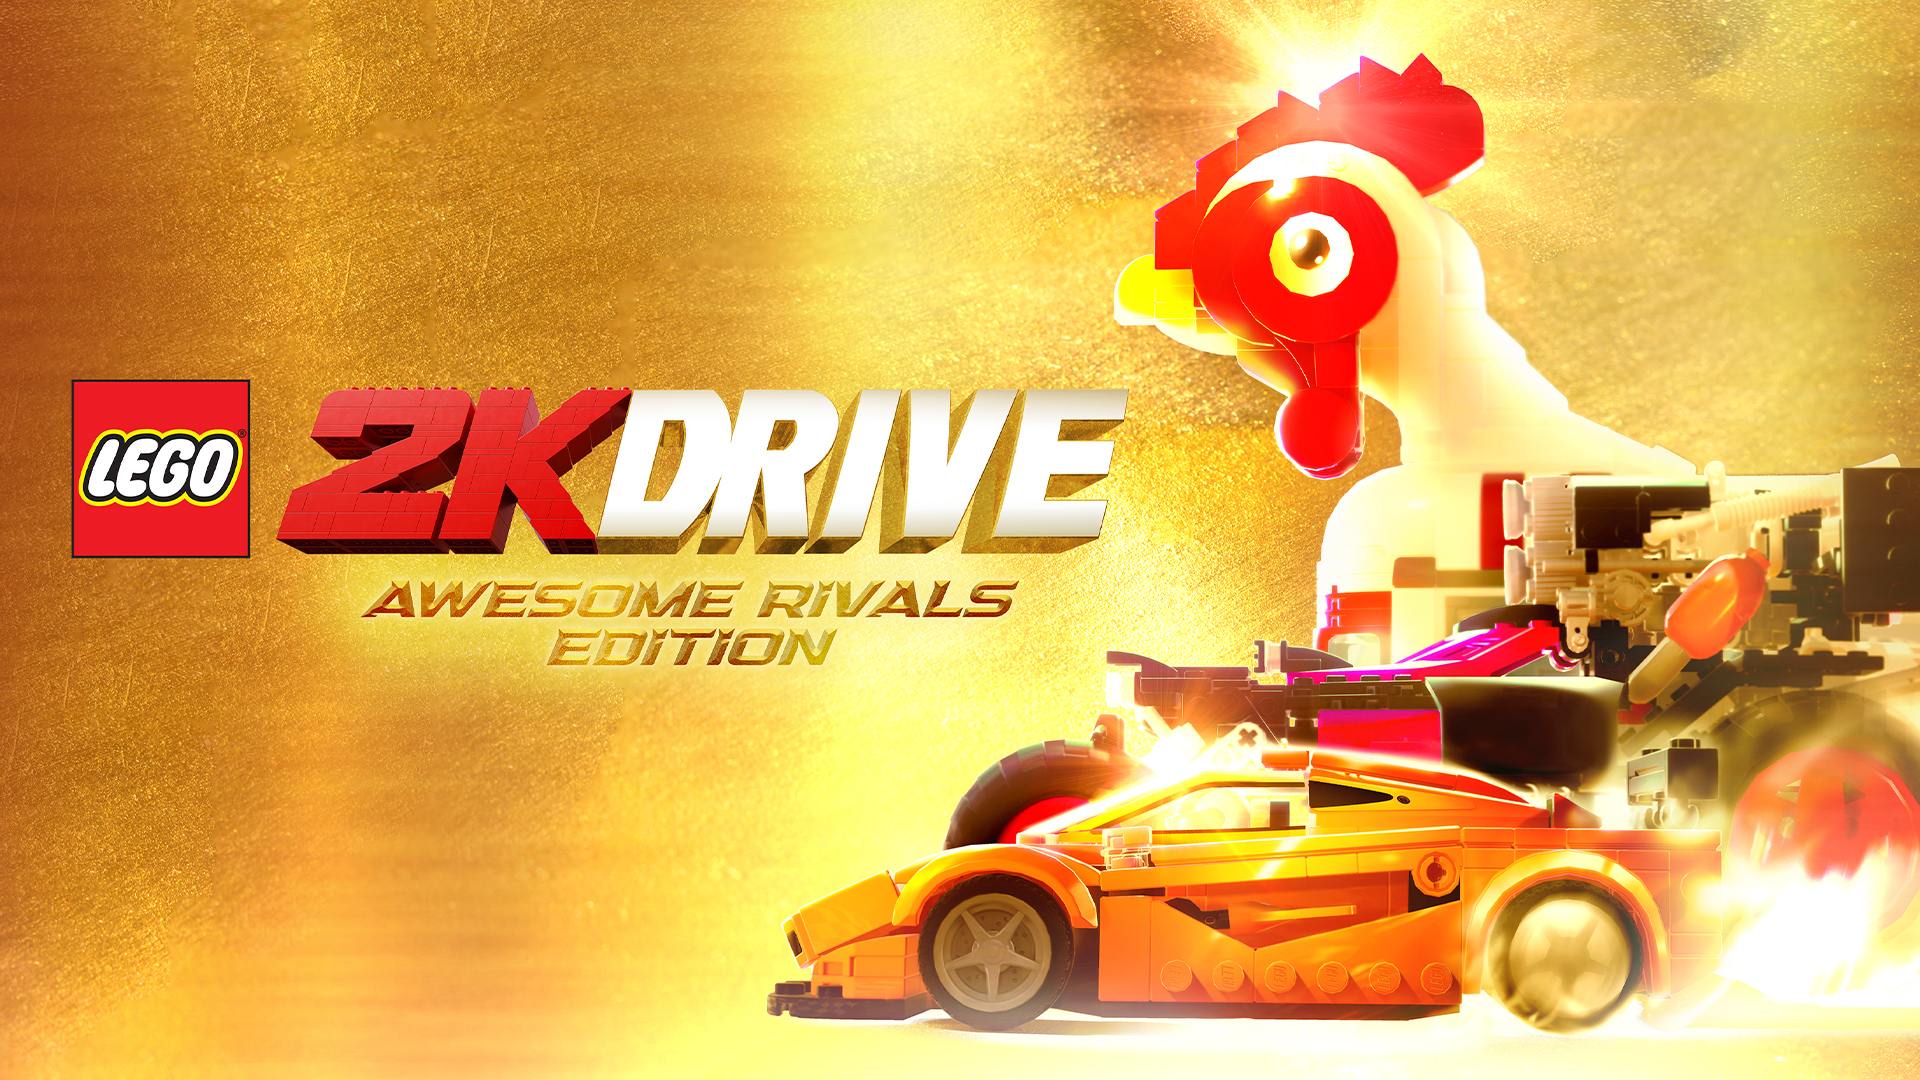 LEGO® 2K Drive Edición Awesome Rivals